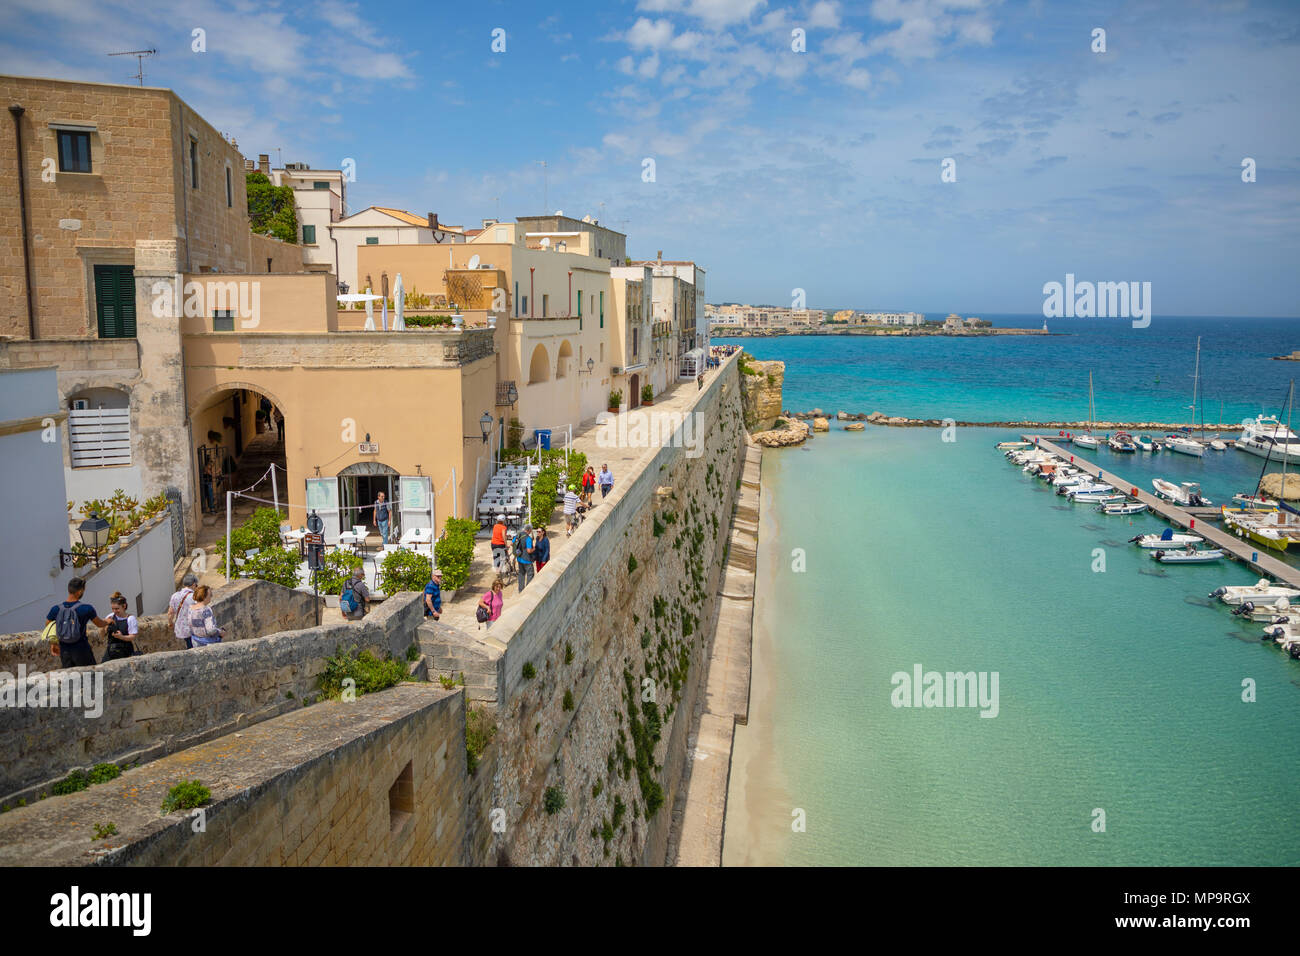 Otranto, Italy - 6.05.2018: View of small town Otranto, province of Lecce in the Salento peninsula, Puglia, Italy Stock Photo